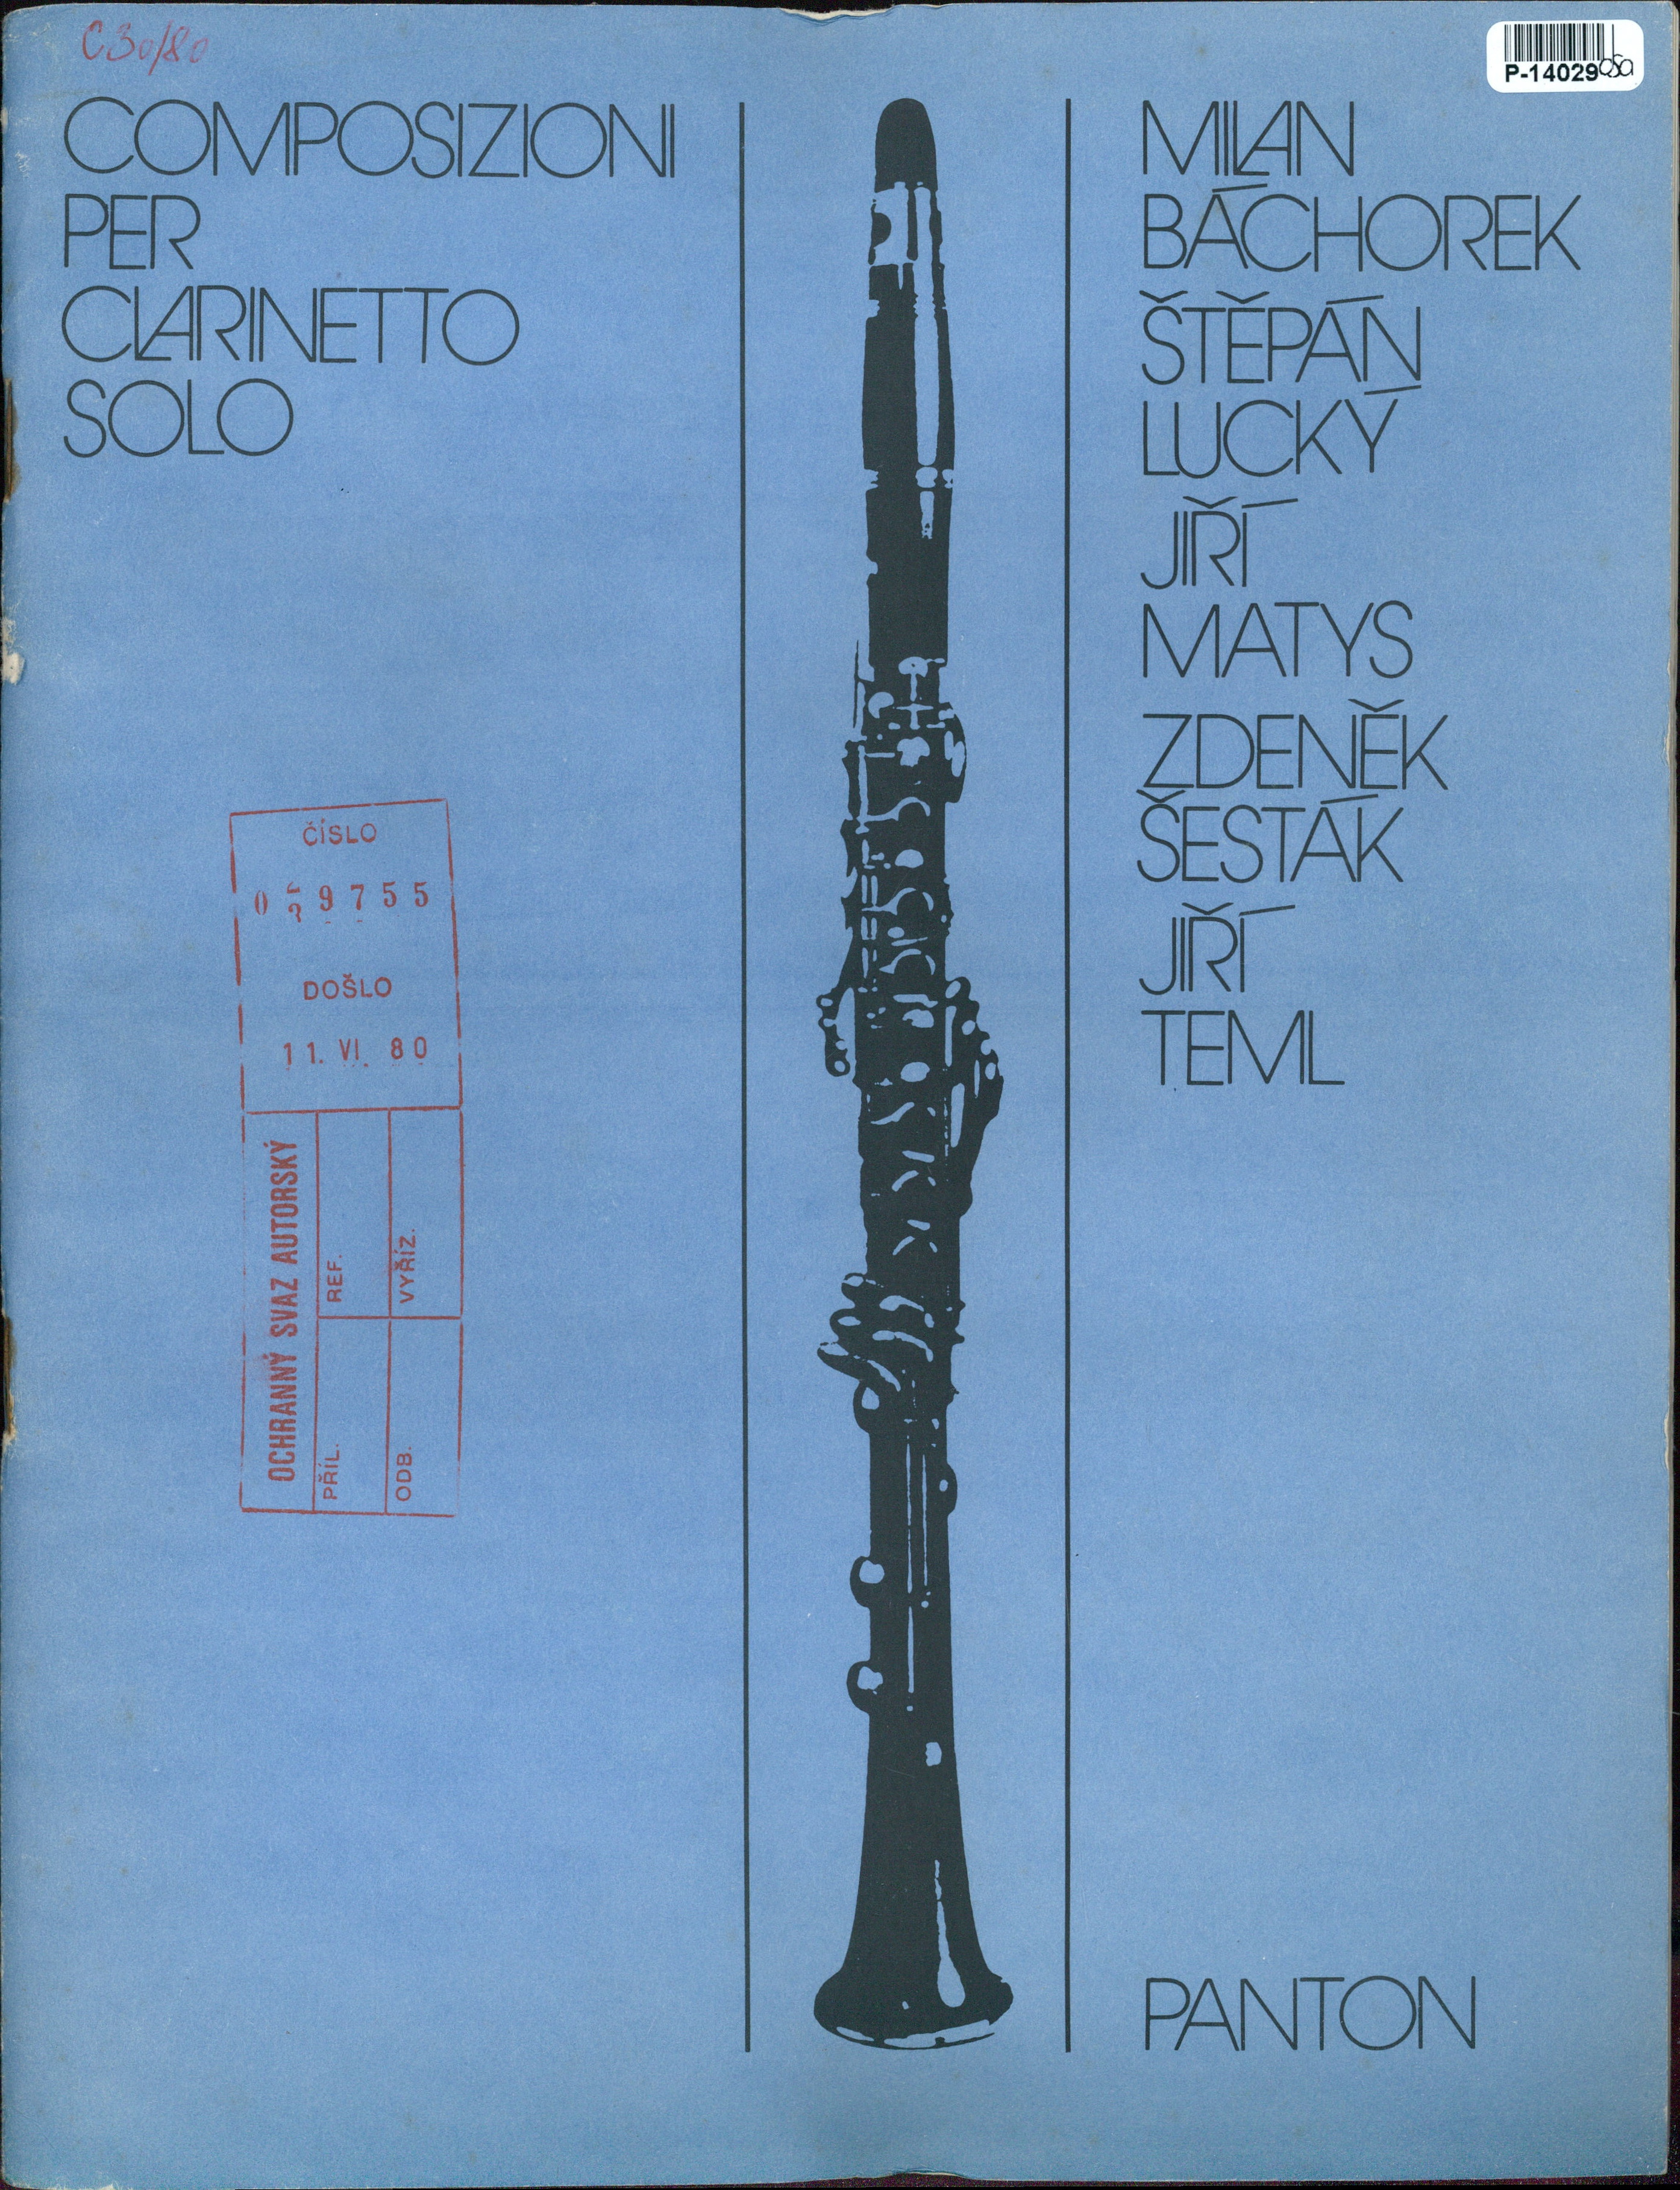 Composizioni per clarinetto solo